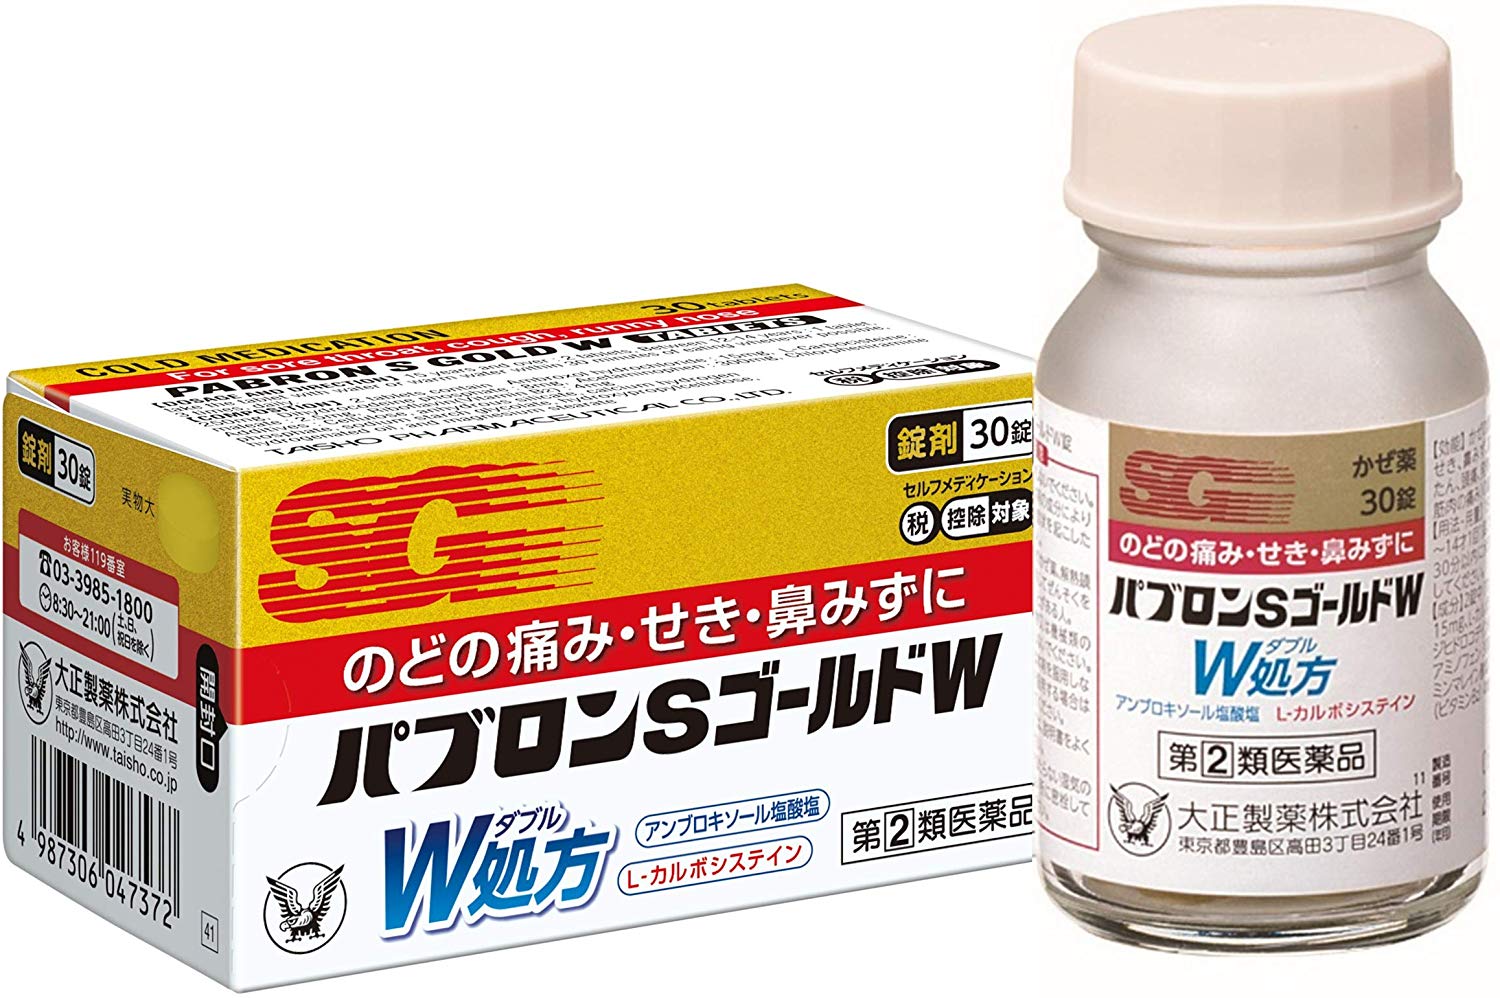 日本大正製藥綜合感冒藥微粒 44包 到期日: 2025年4月以上 - Source Easy